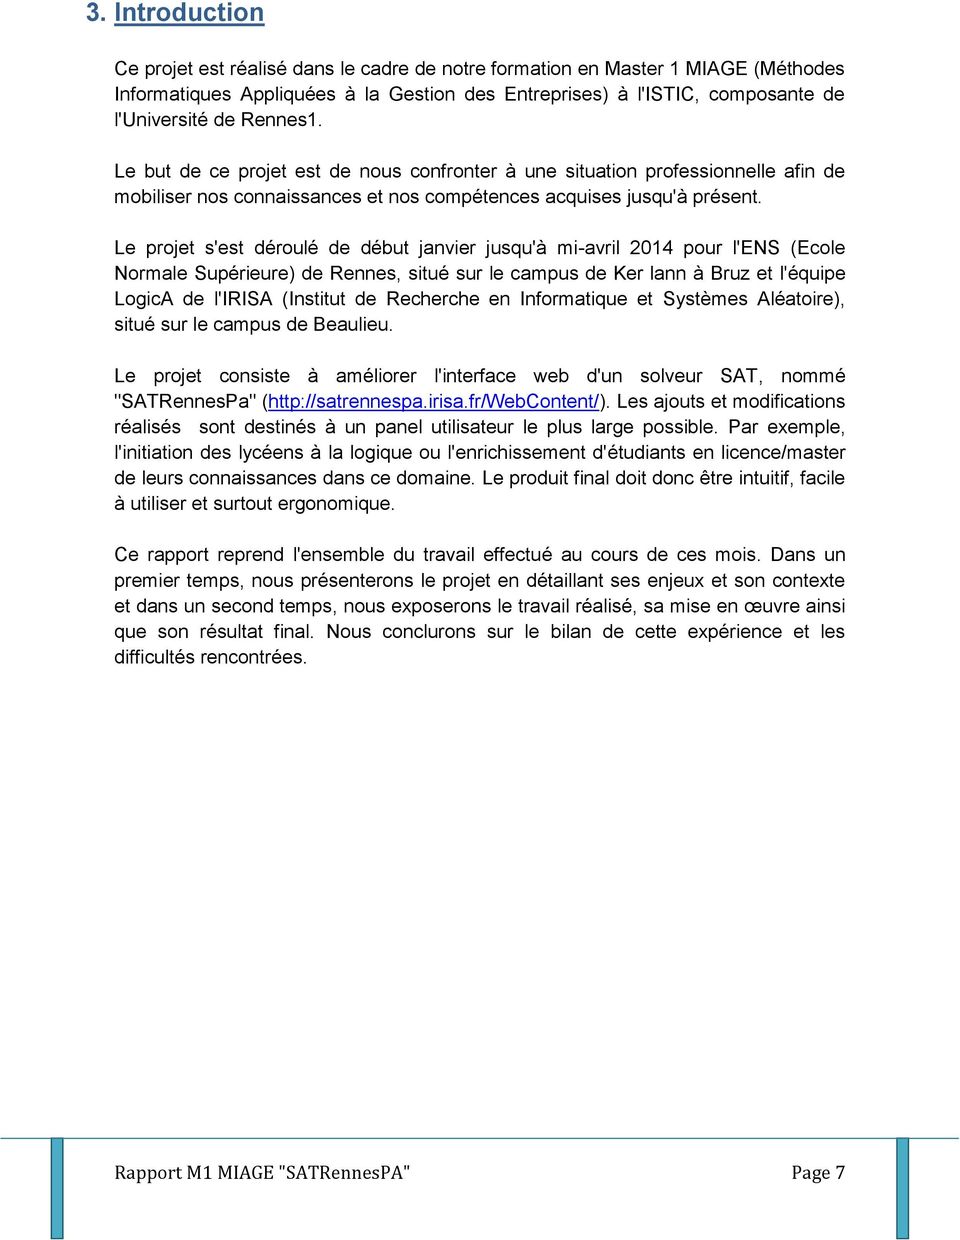 Le projet s'est déroulé de début janvier jusqu'à mi-avril 2014 pour l'ens (Ecole Normale Supérieure) de Rennes, situé sur le campus de Ker lann à Bruz et l'équipe LogicA de l'irisa (Institut de